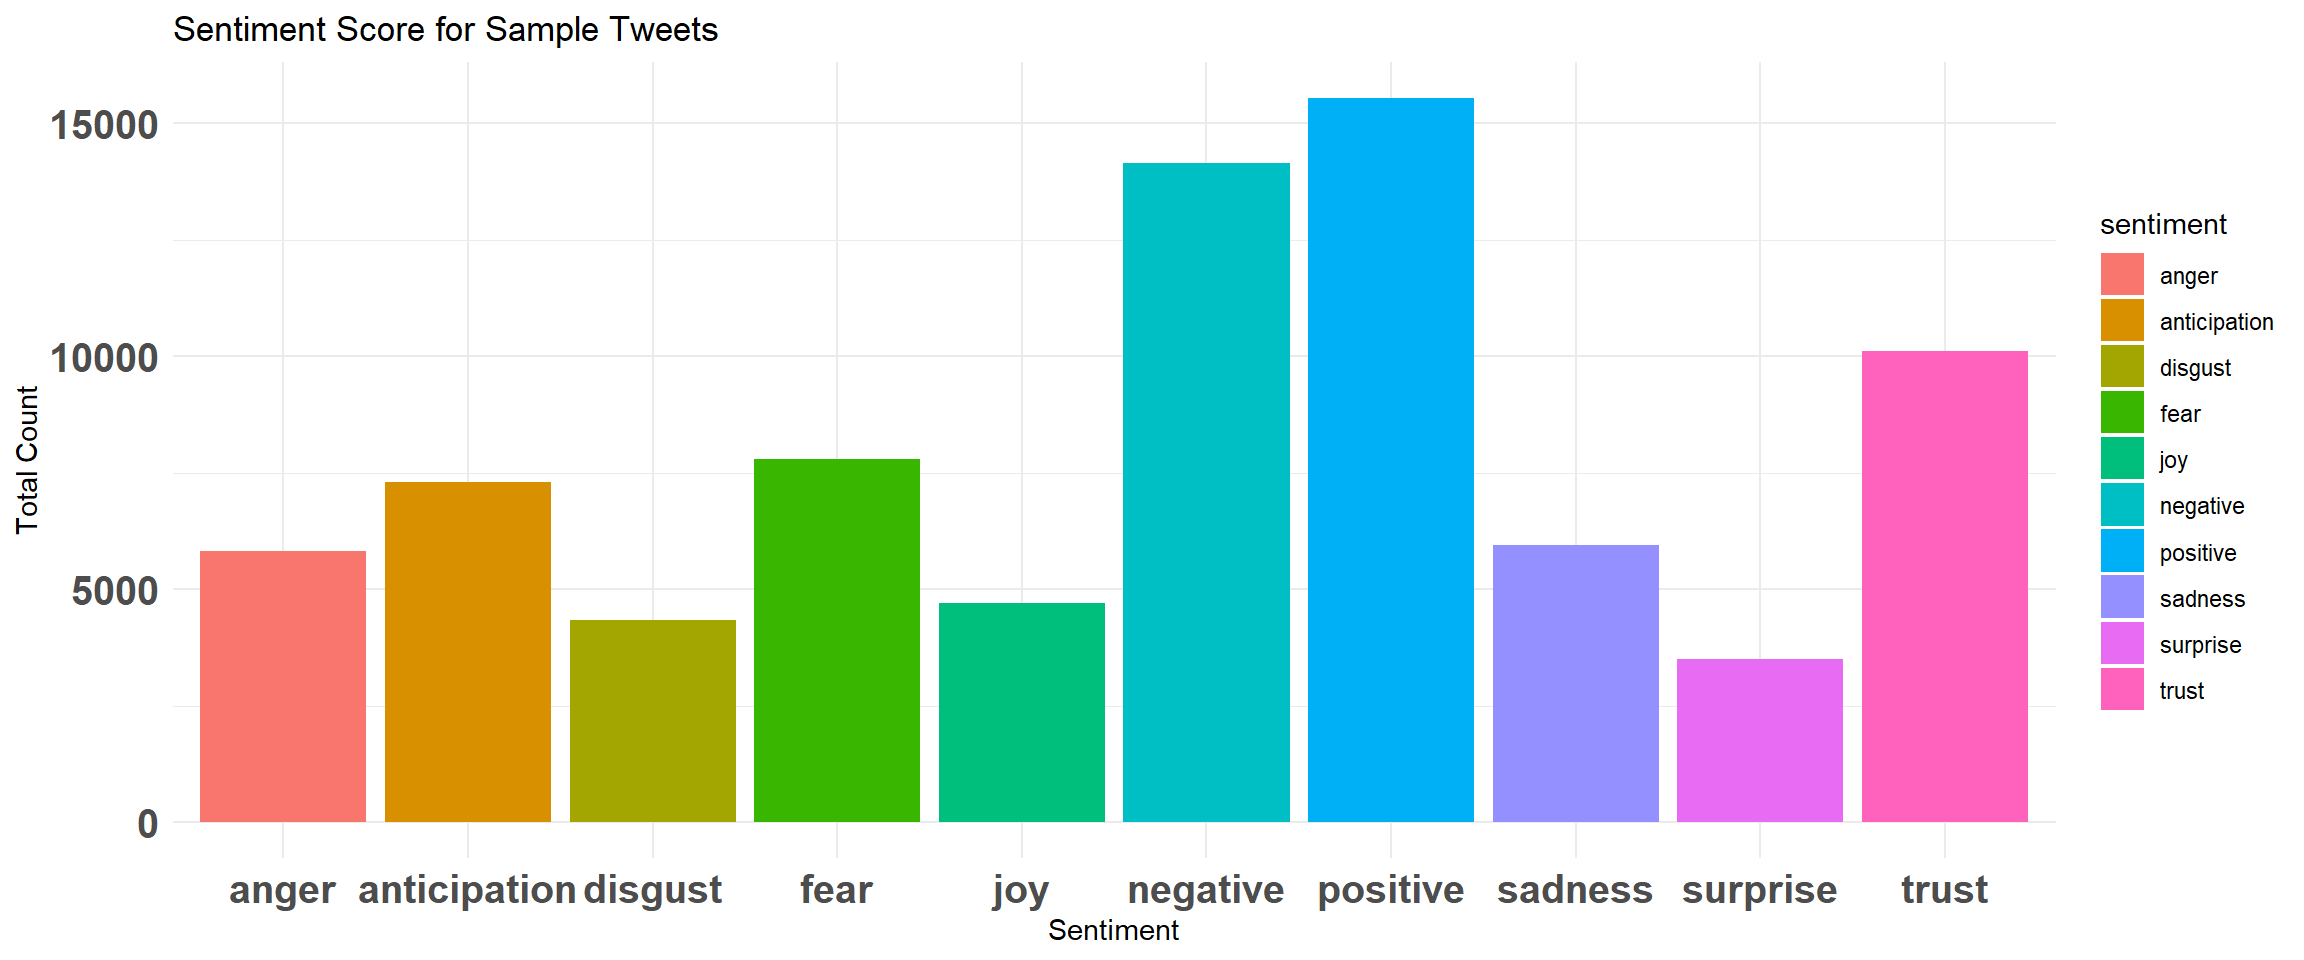 Emotions/Sentiment Scores